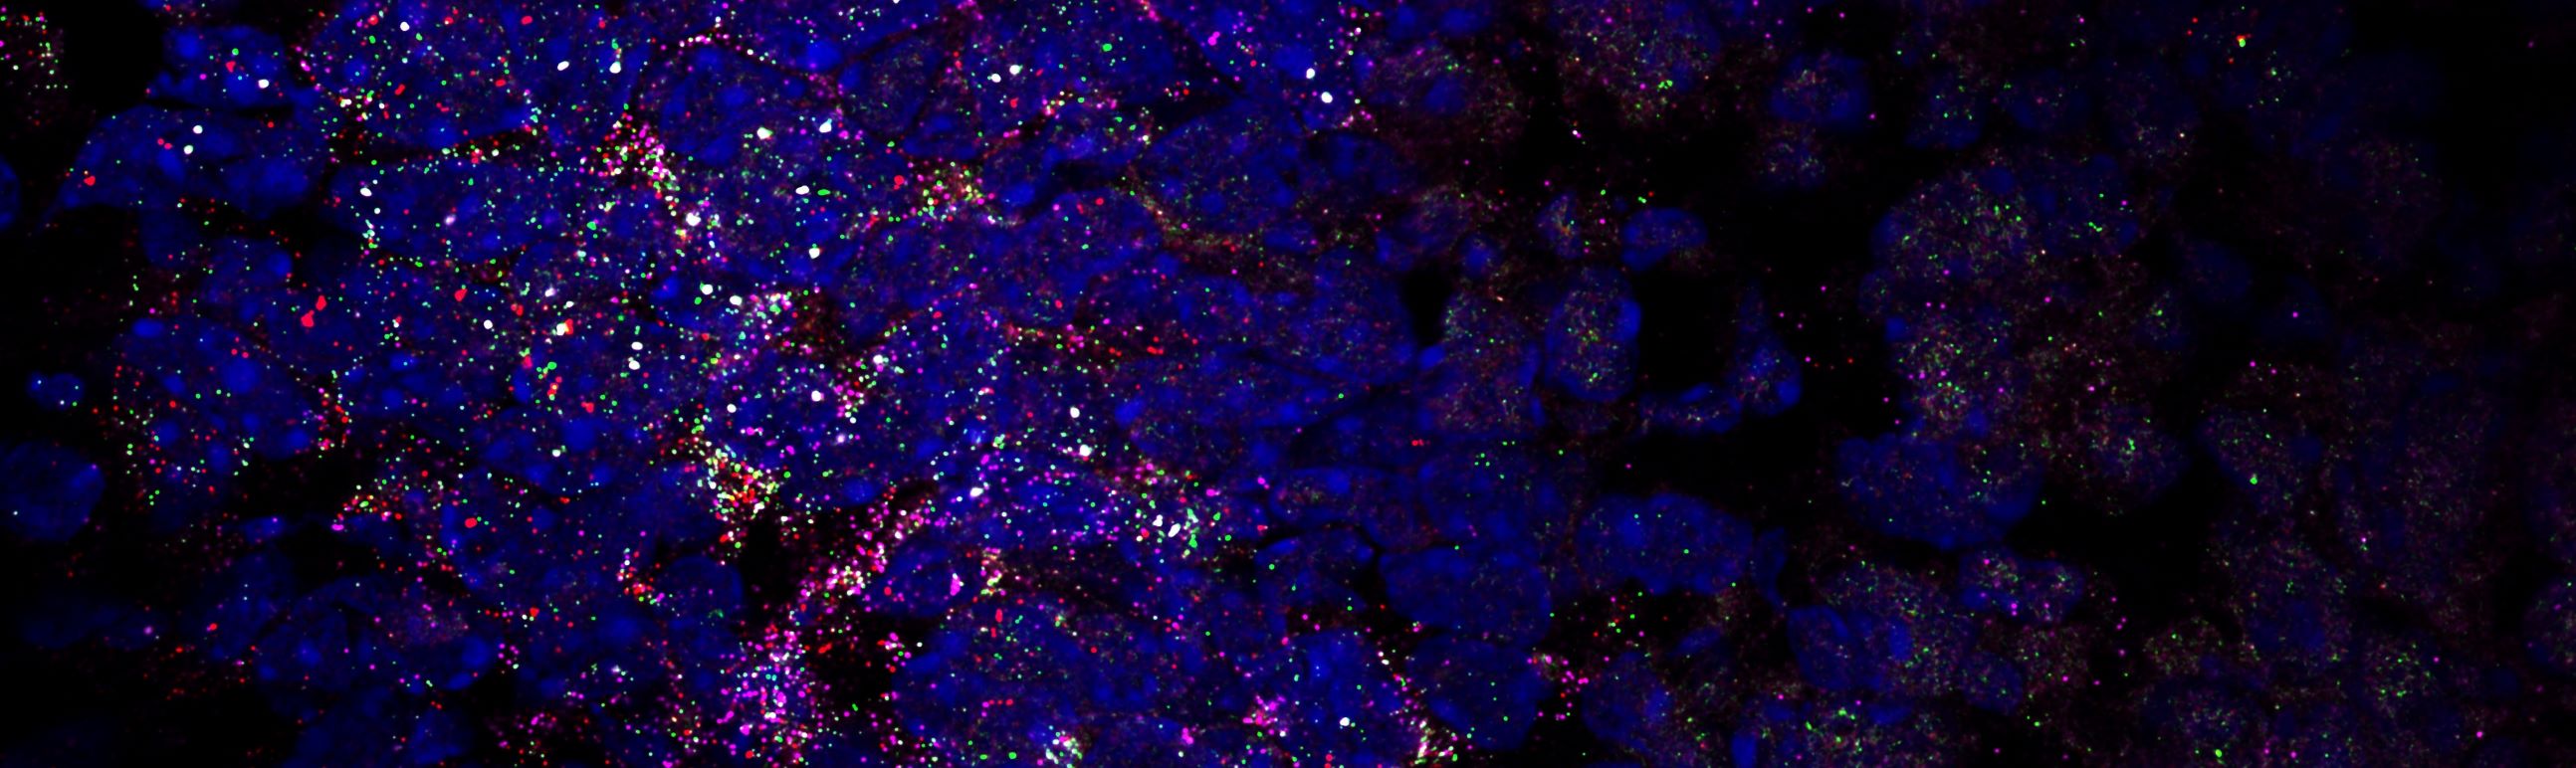 Fluoreszenzmikroskopische Aufnahme einer Hulu-FISH-Analyse. Zu sehen sind bunt leuchtende Bildpunkte und Farbflächen auf dunklem Hintergrund.